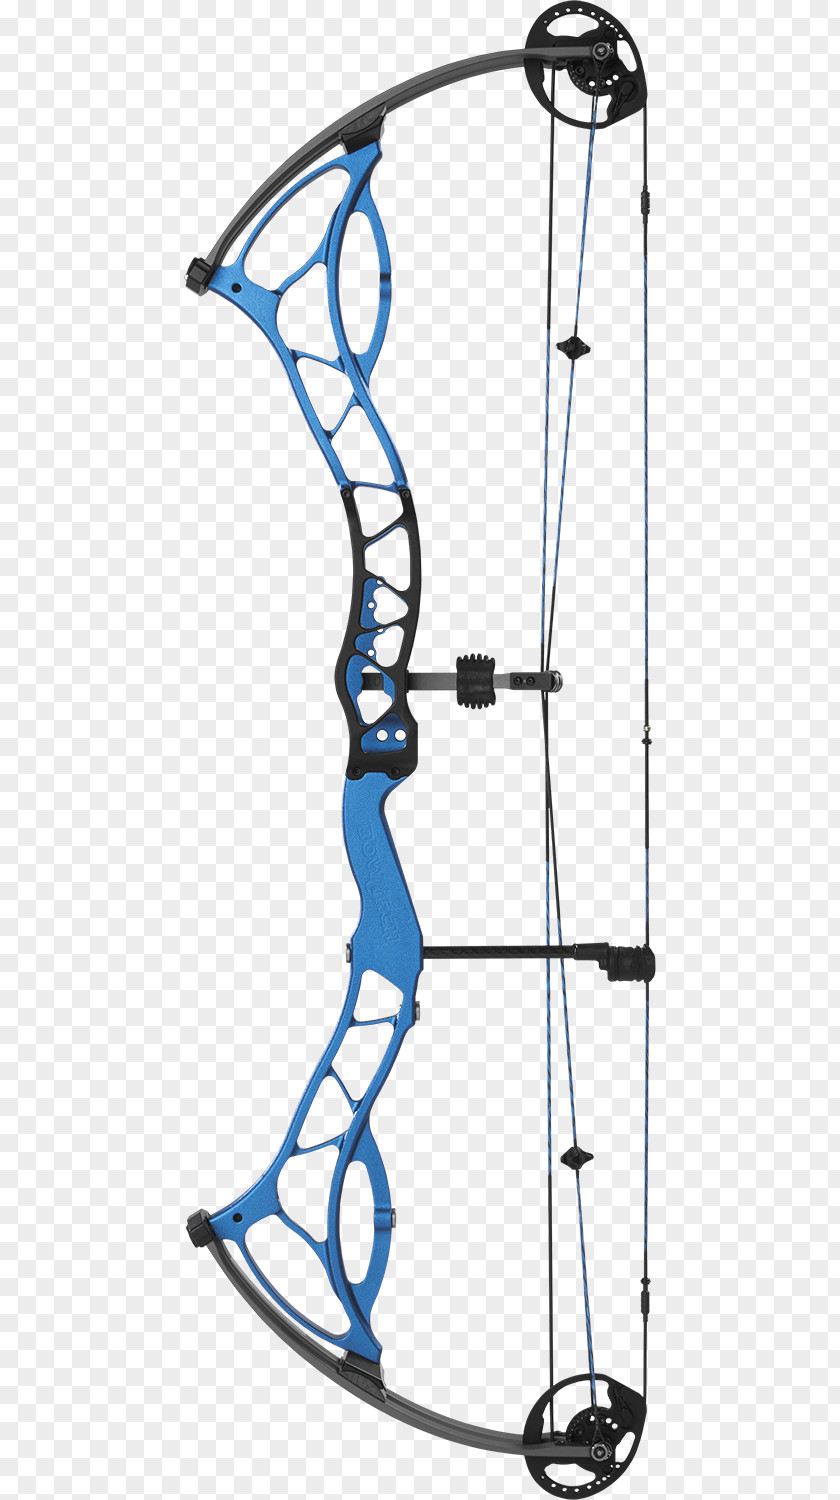 Bowtech Archery Shirts Bow And Arrow Compound Bows BOWTECH, INC Carbon Rose PNG